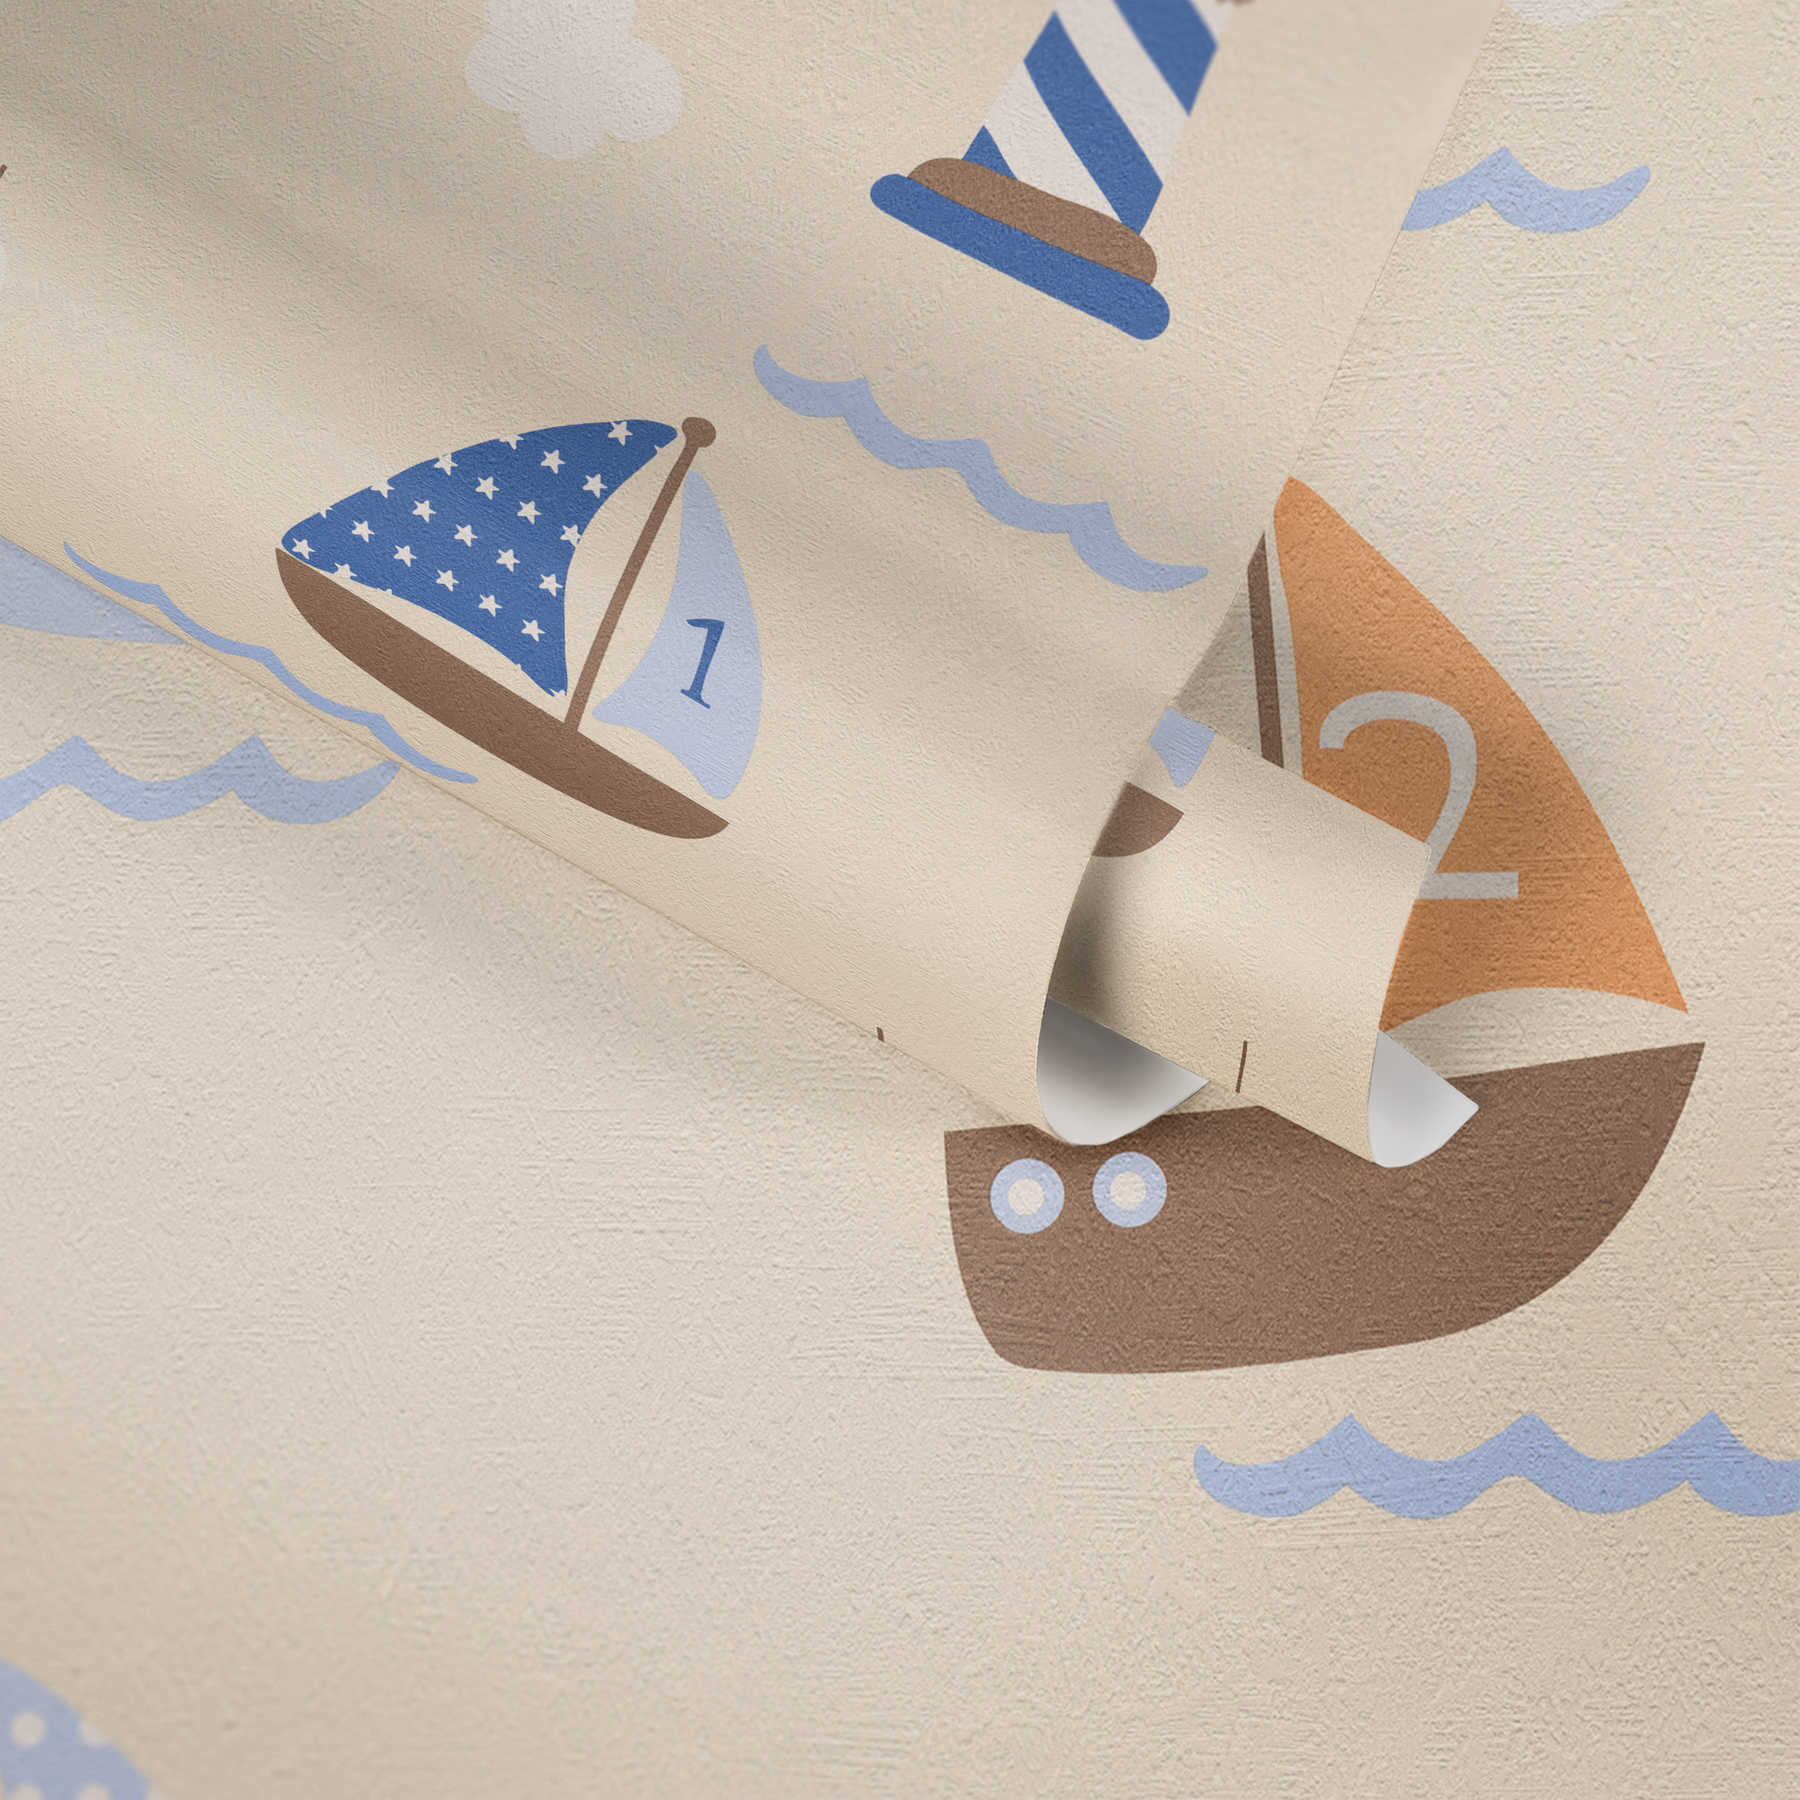             Kinderkamer behang met schip, boot & vuurtoren - blauw, beige
        